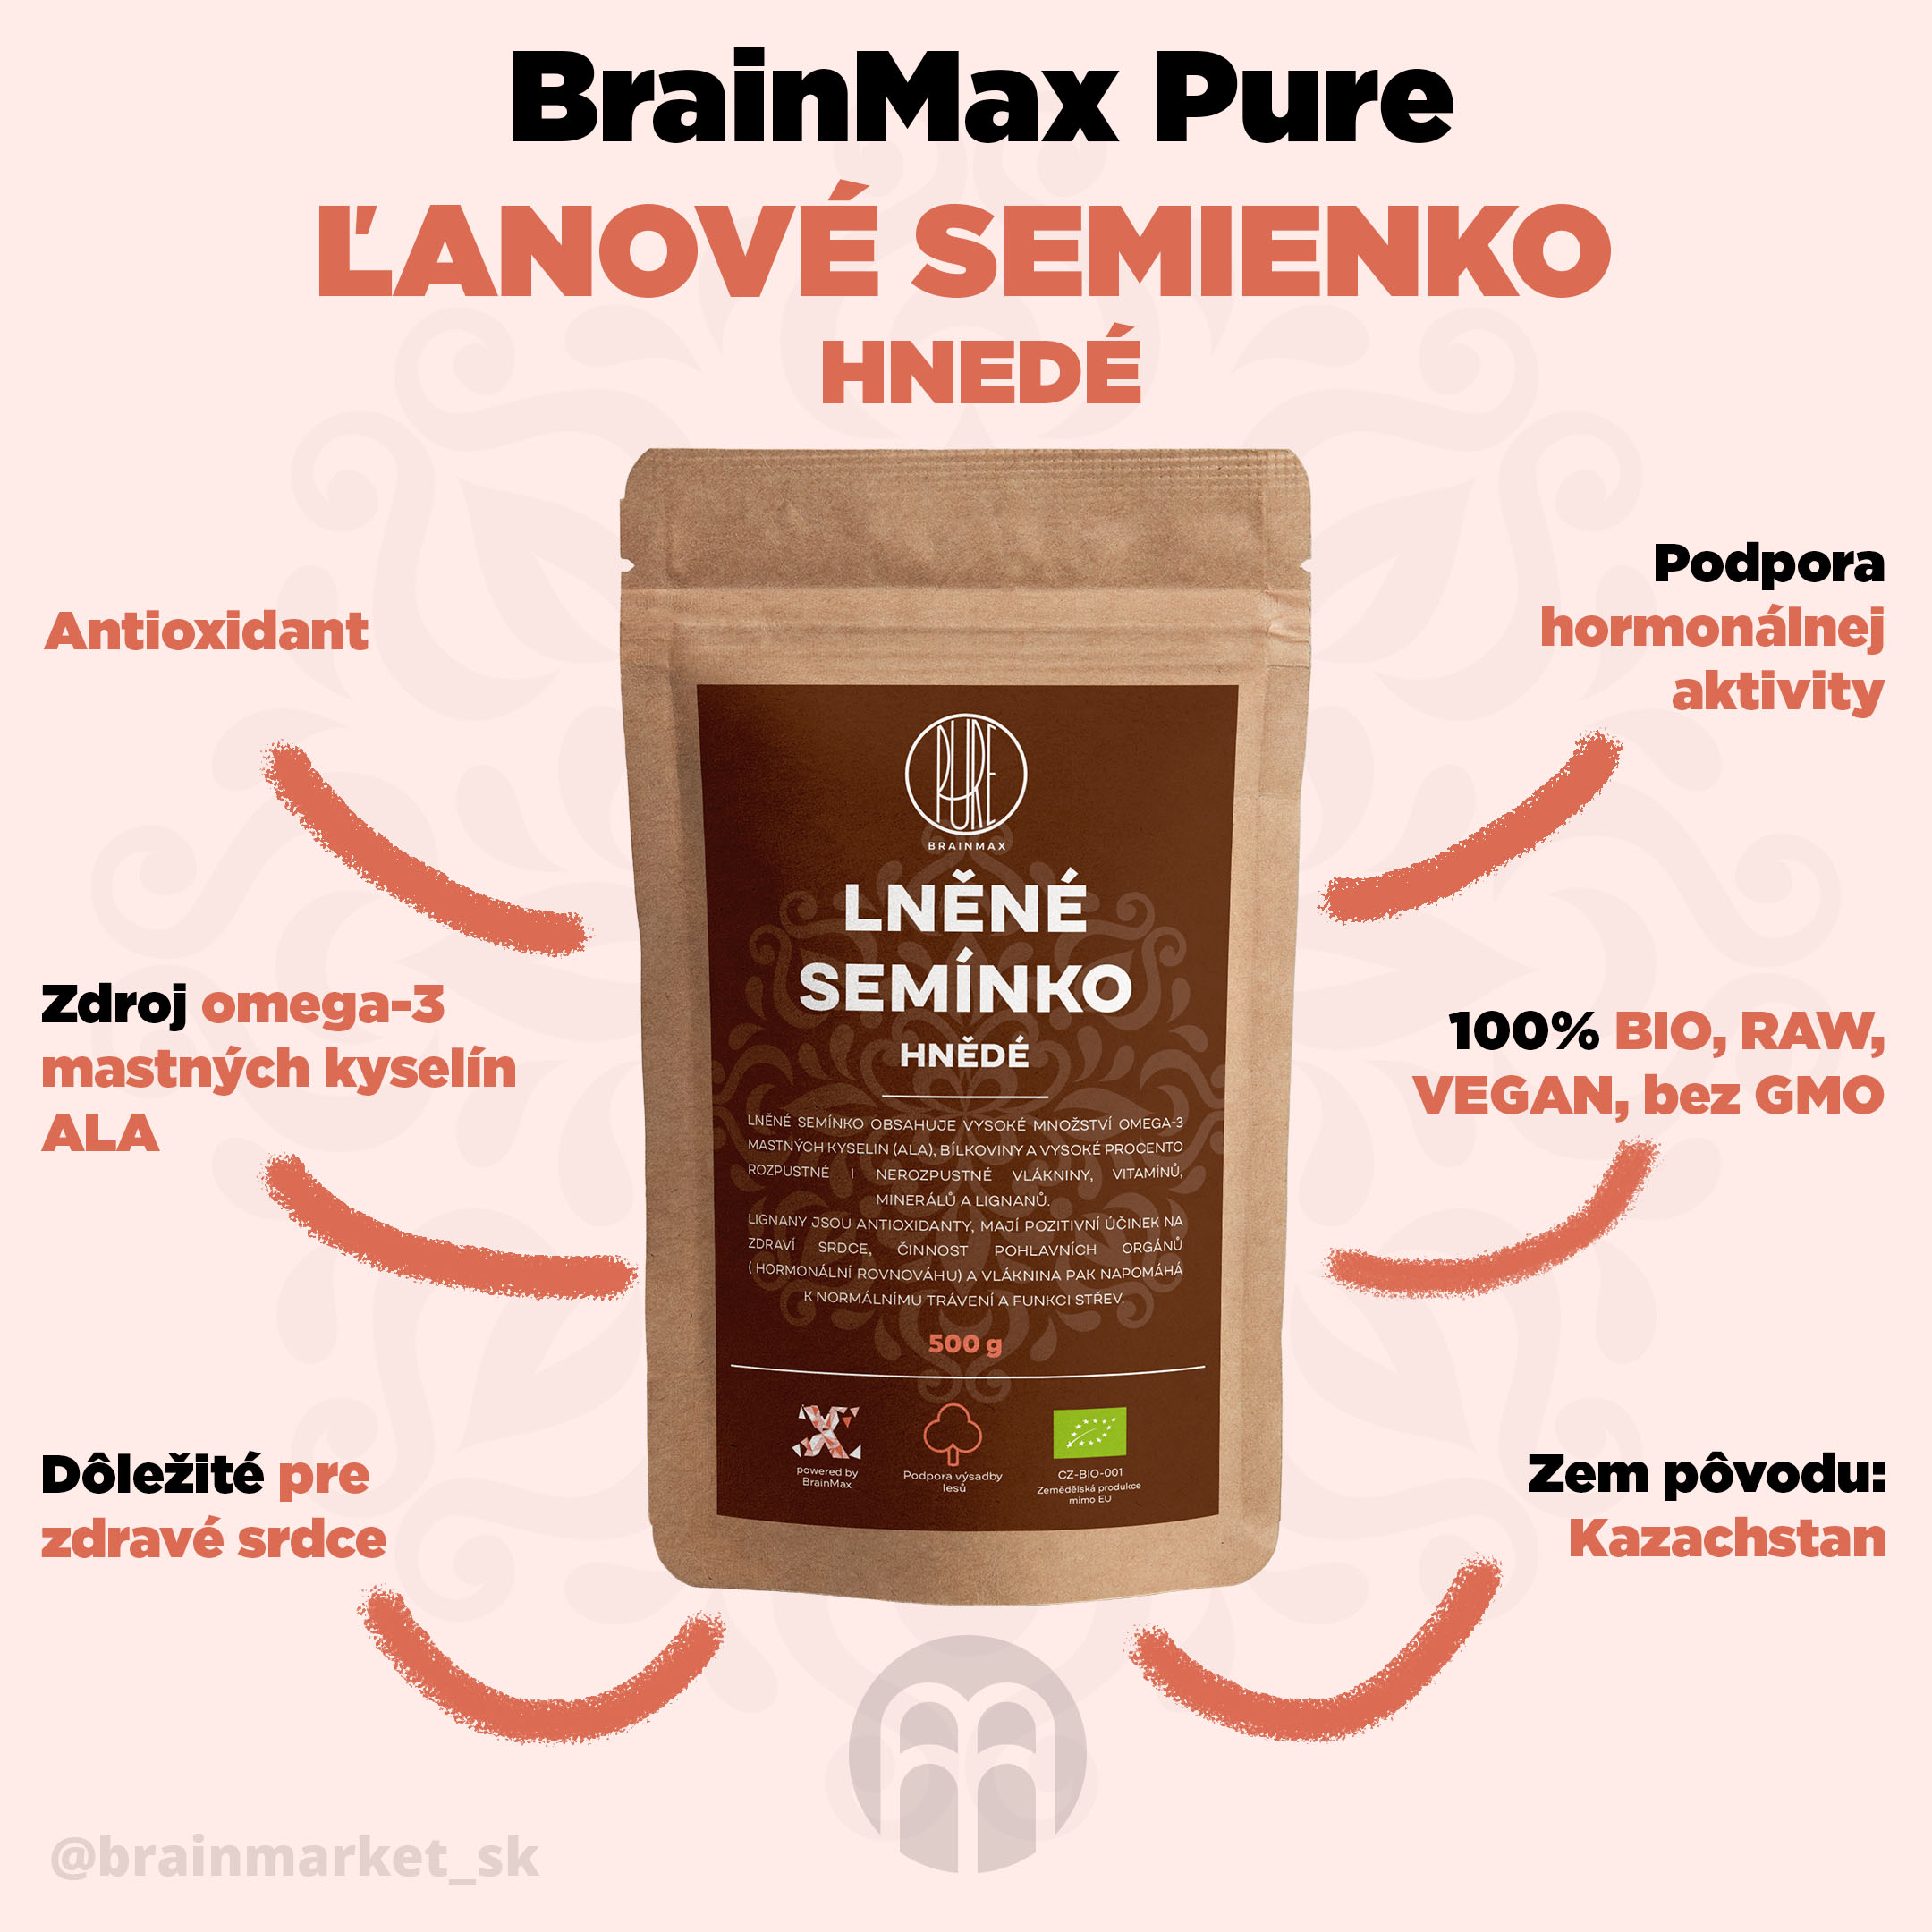 Brainmax Pure Ľanové semienko (hnedé) BIO, 500 g